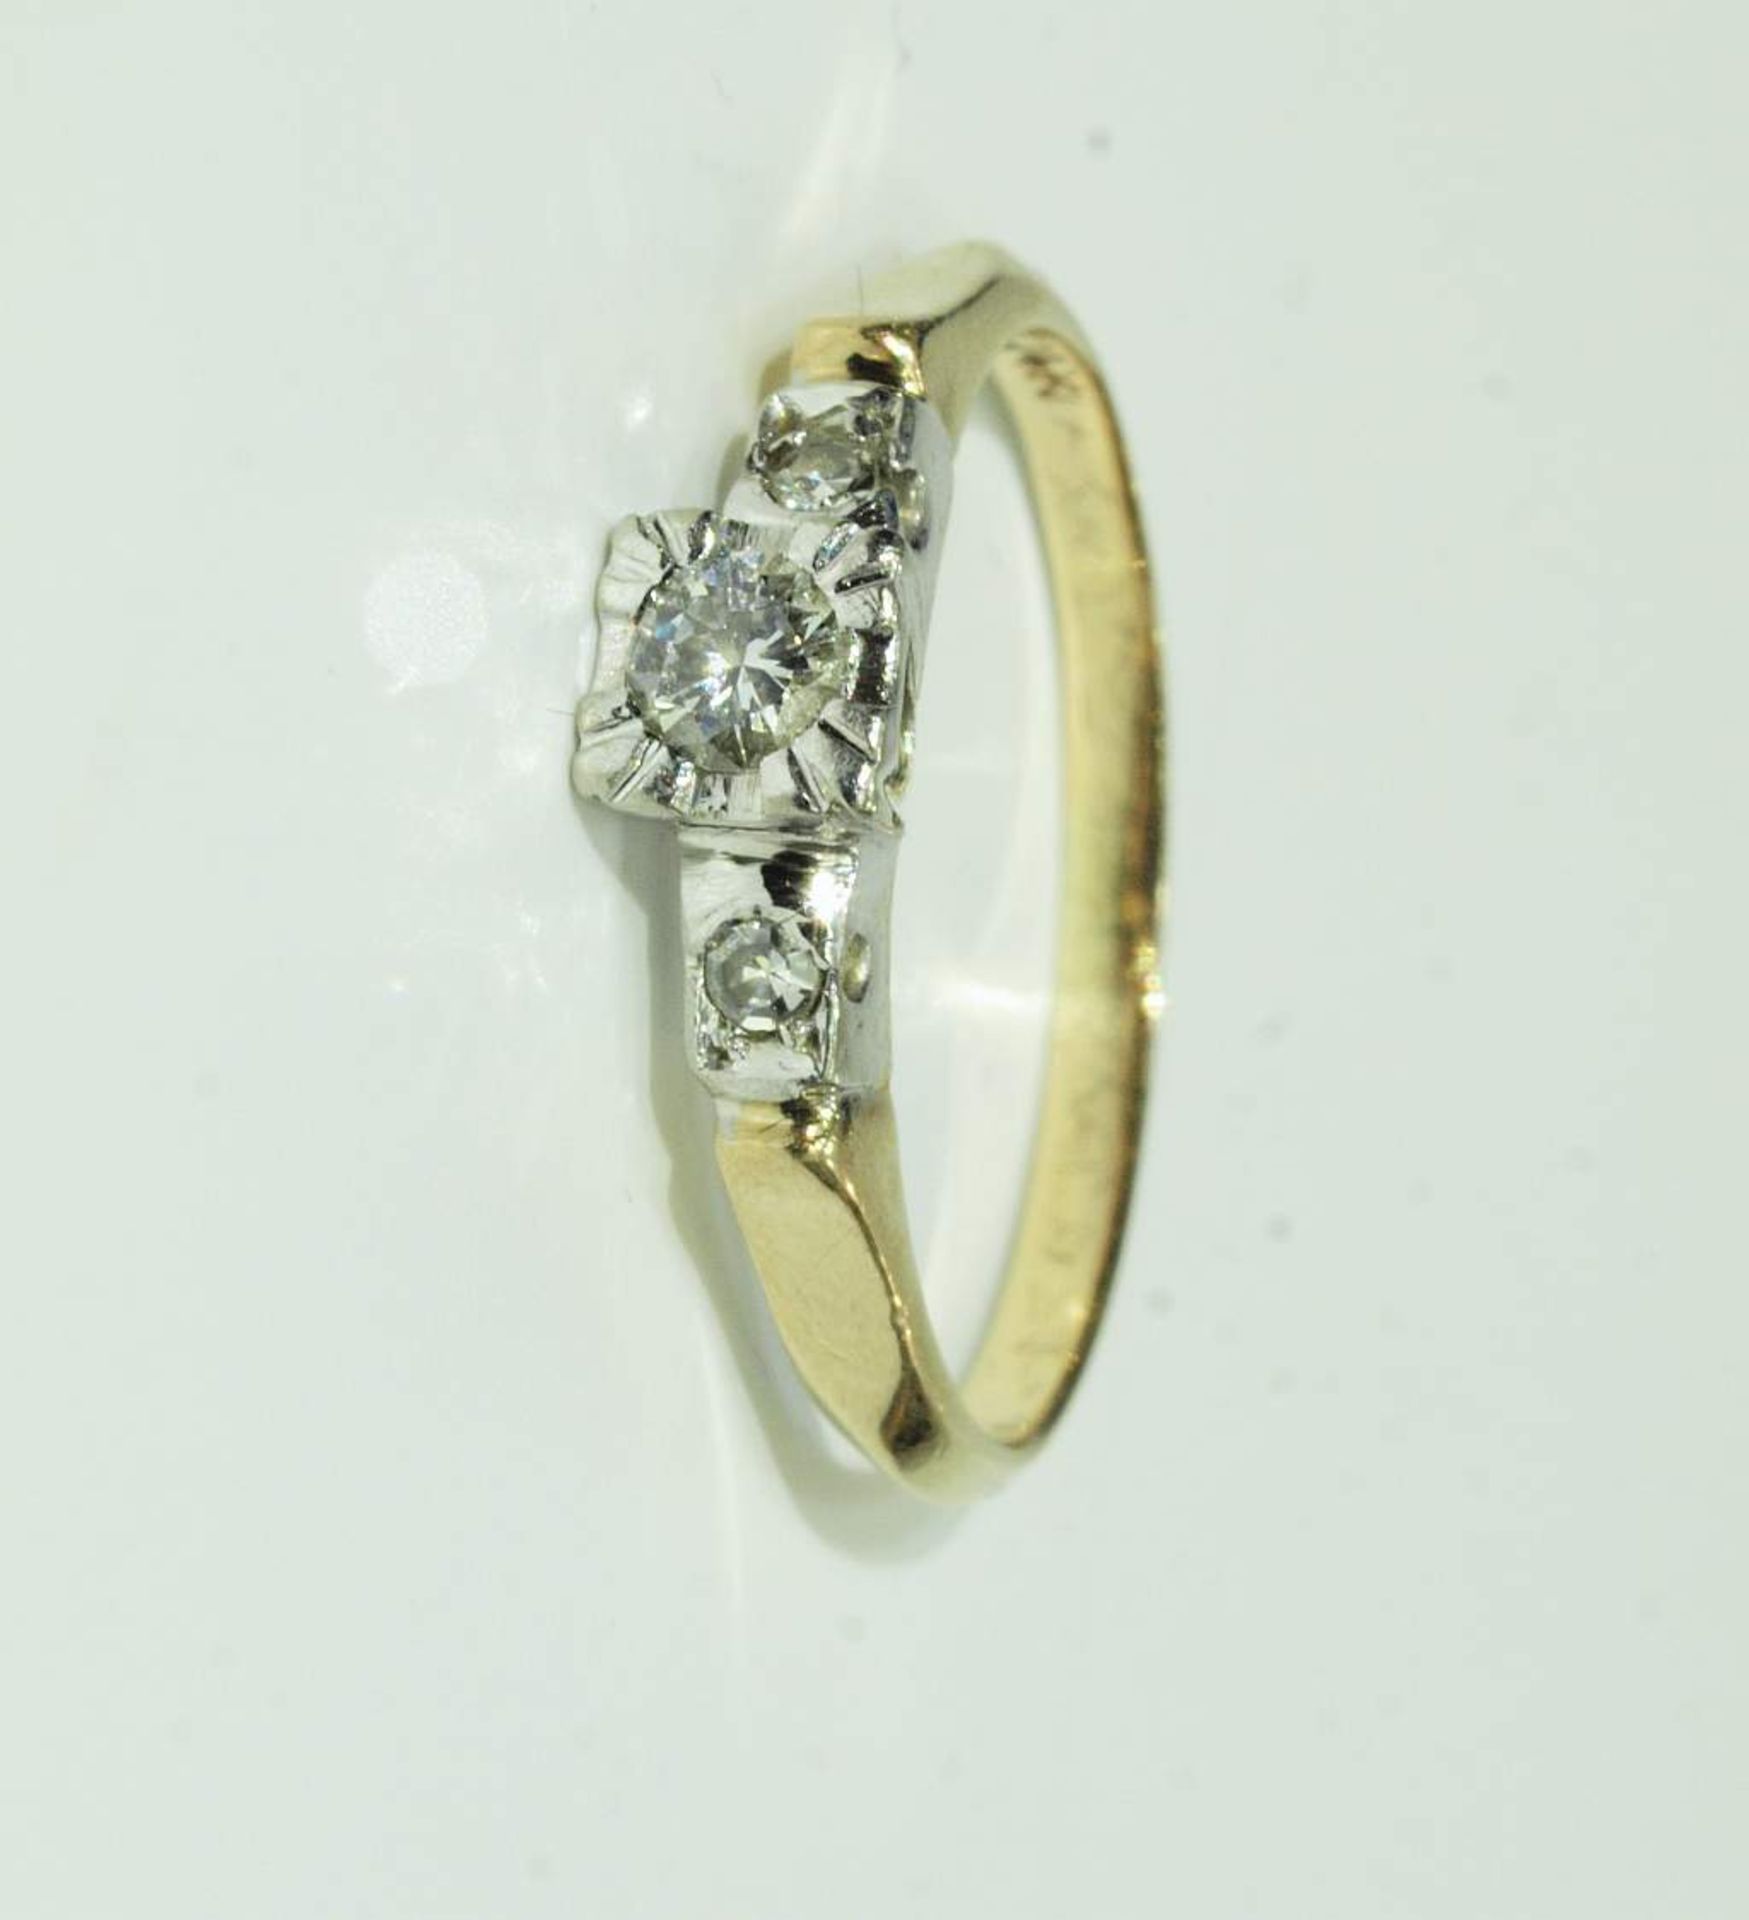 Brillant-Ring. Brillant-Ring. 585er Gelbgold. Mittig Brillant 0,12 ct. H/si-p1, flankiert von zwei - Bild 2 aus 5